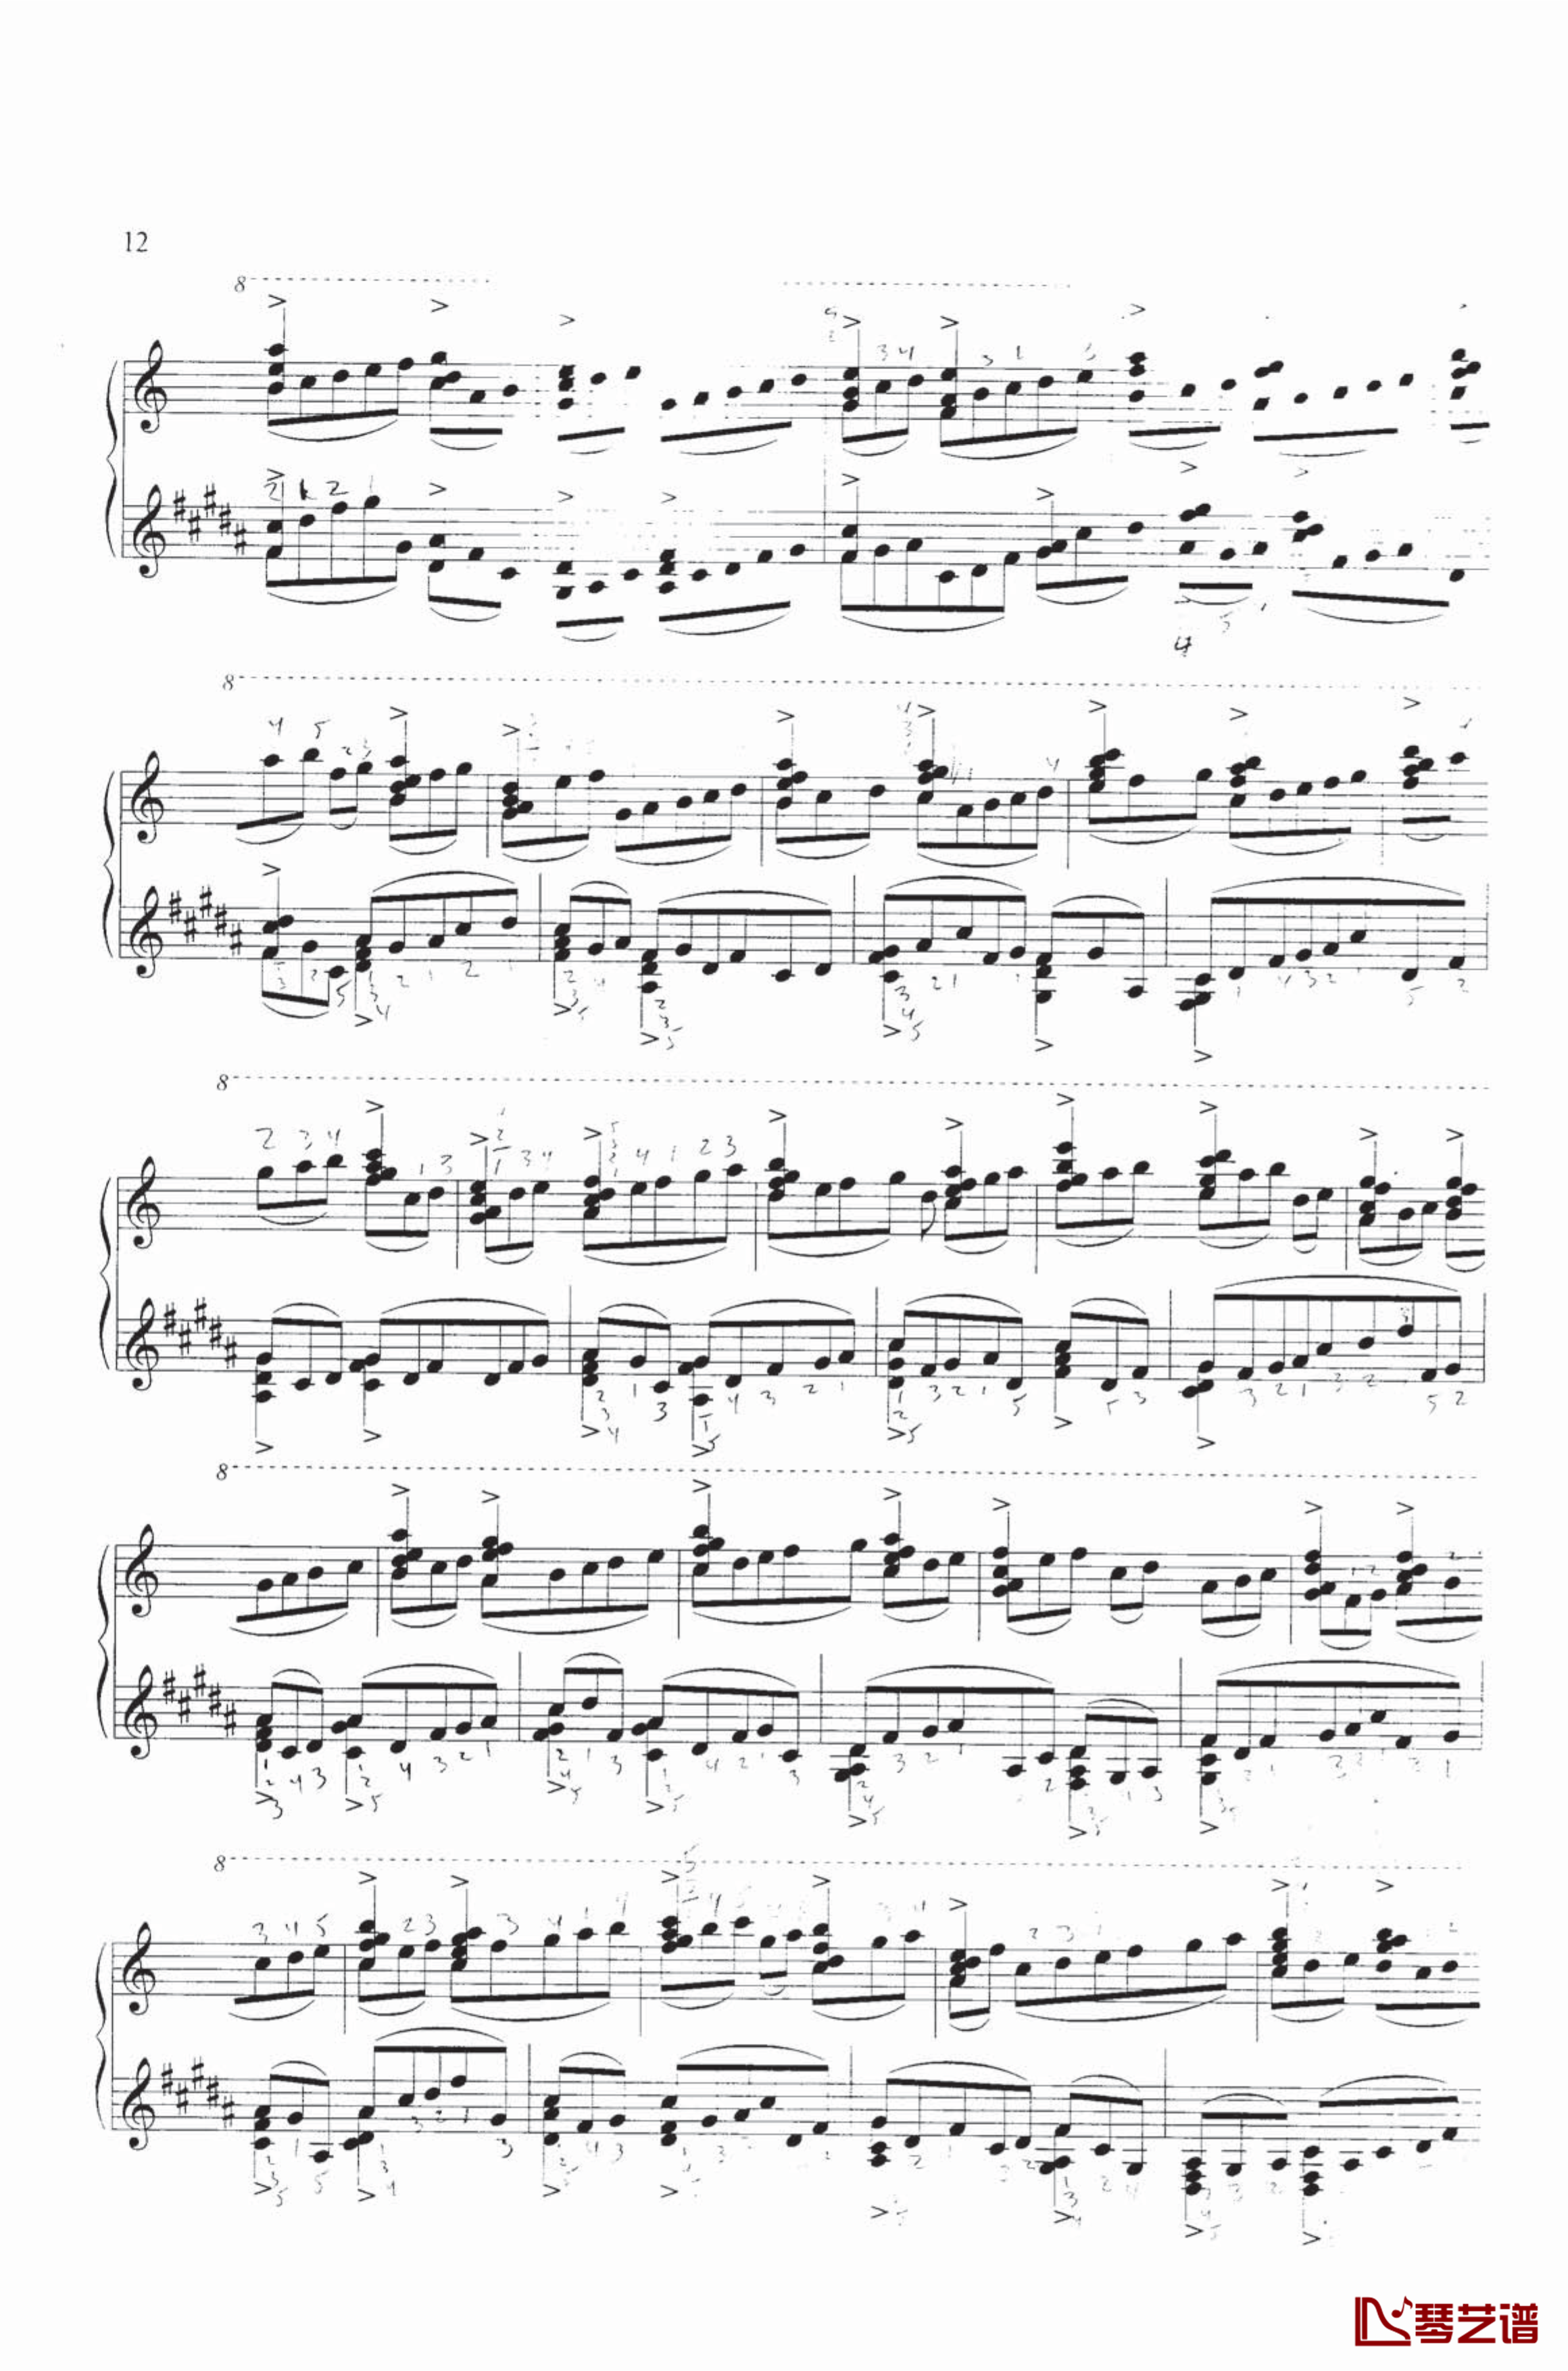 钢琴练习曲NO.1钢琴谱-里盖蒂7